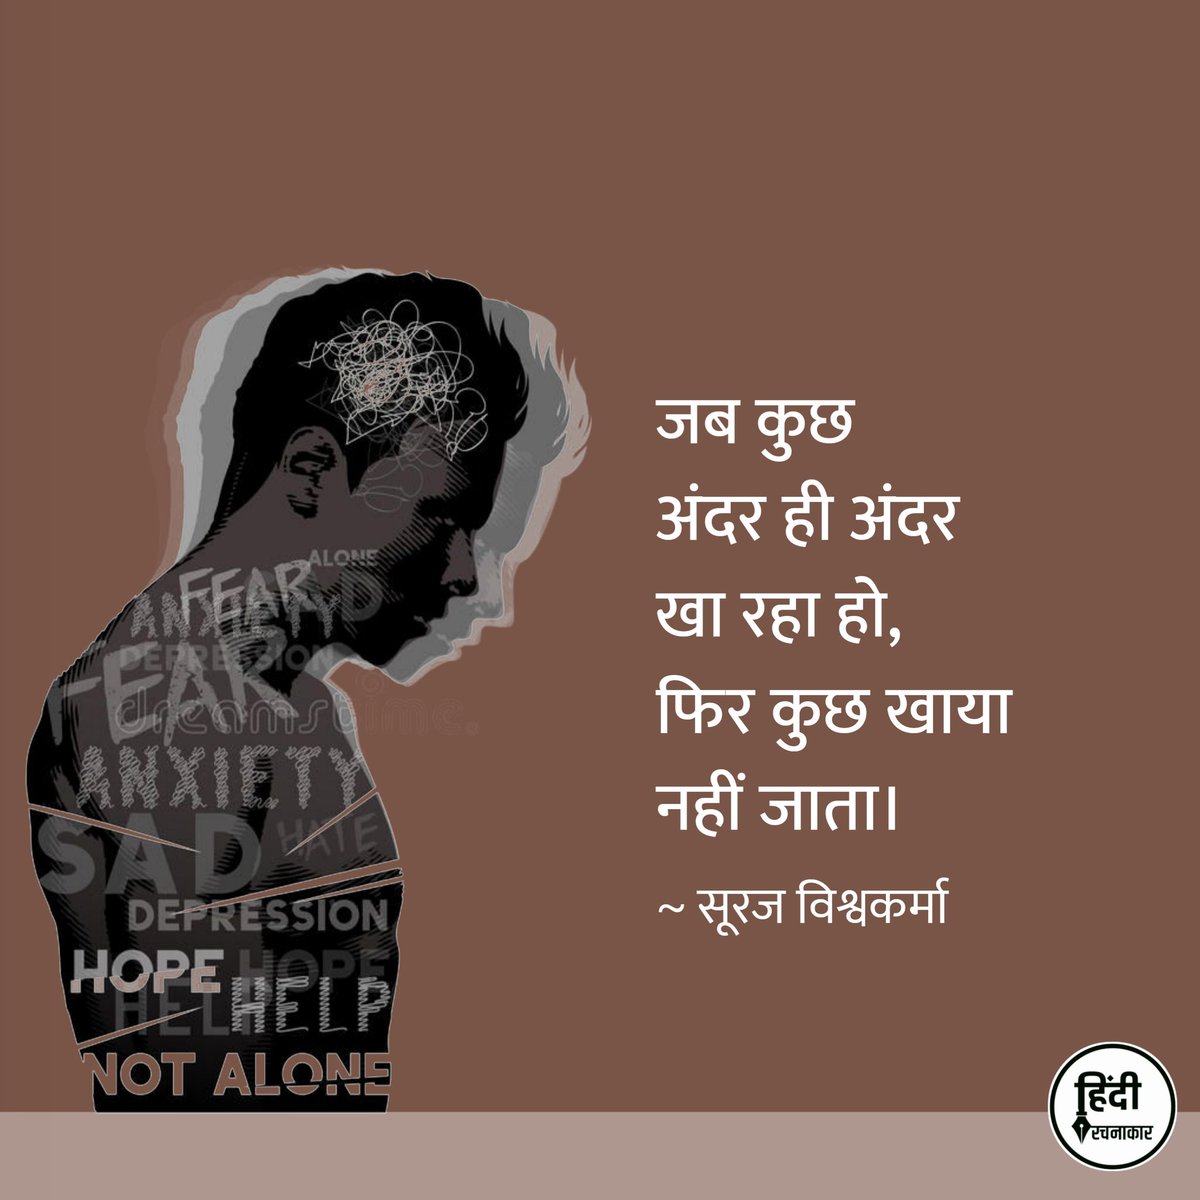 जब कुछ अंदर ही अंदर खा रहा हो,
फिर कुछ खाया नहीं जाता।

~ सूरज विश्वकर्मा
@Officialdevsur1

#depression #anxiety #fear
#loneliness
#hindipoetry #hindiquotes 
#kavita #poetry #quotes 
#hindirachnakaar #devsuraj